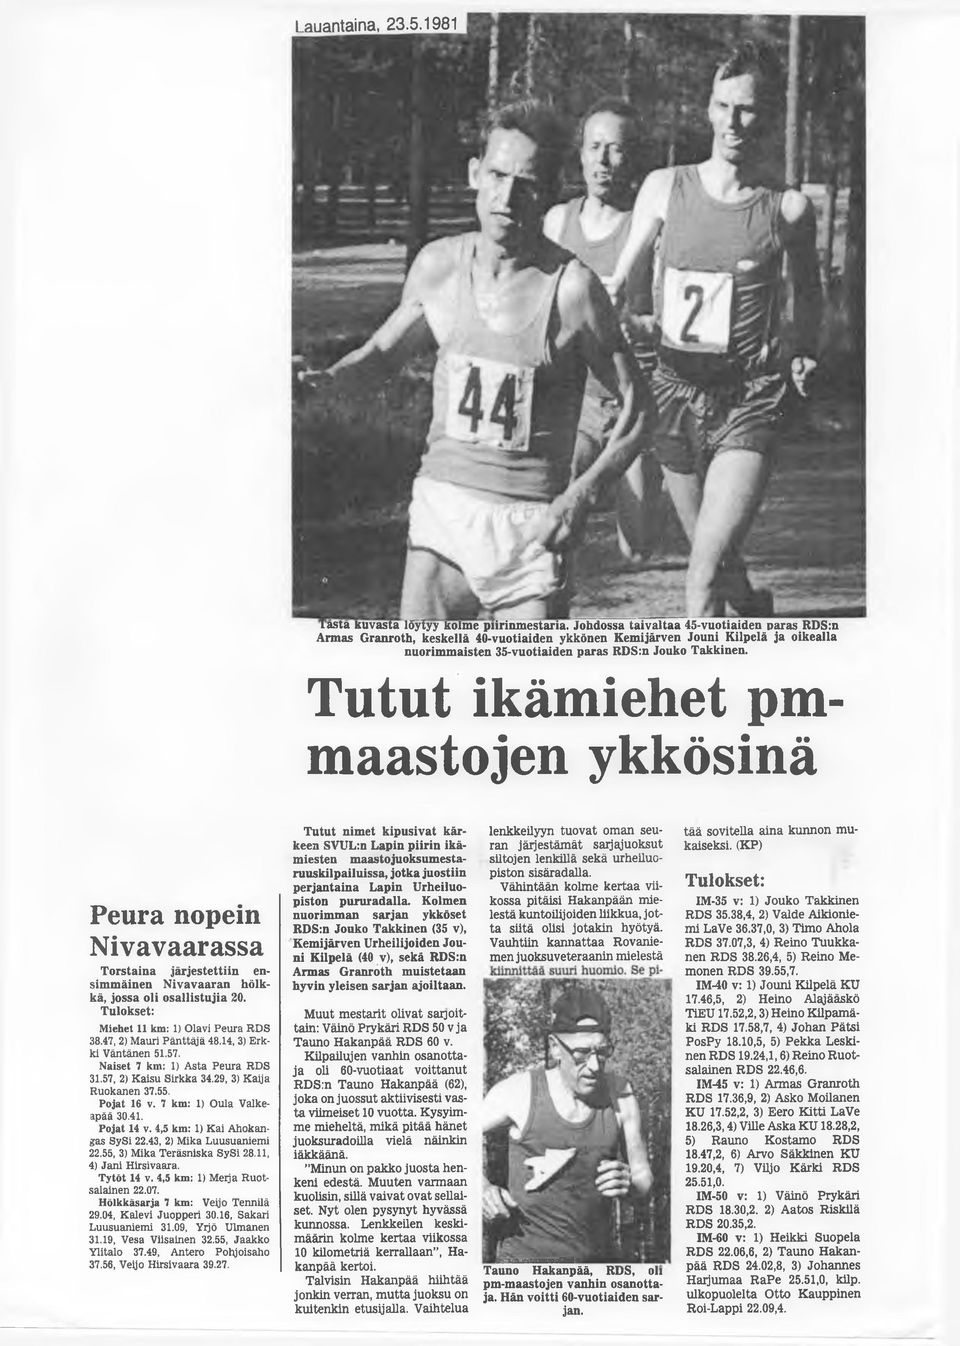 Tutut ikämiehet pmmaastojen ykkösinä Peura nopein Nivavaarassa Torstaina järjestettiin ensimmäinen Nivavaaran hölkkä, jossa oli osallistujia 20. Tulokset: Miehet 11 km: 1) Olavi Peura RDS 38.